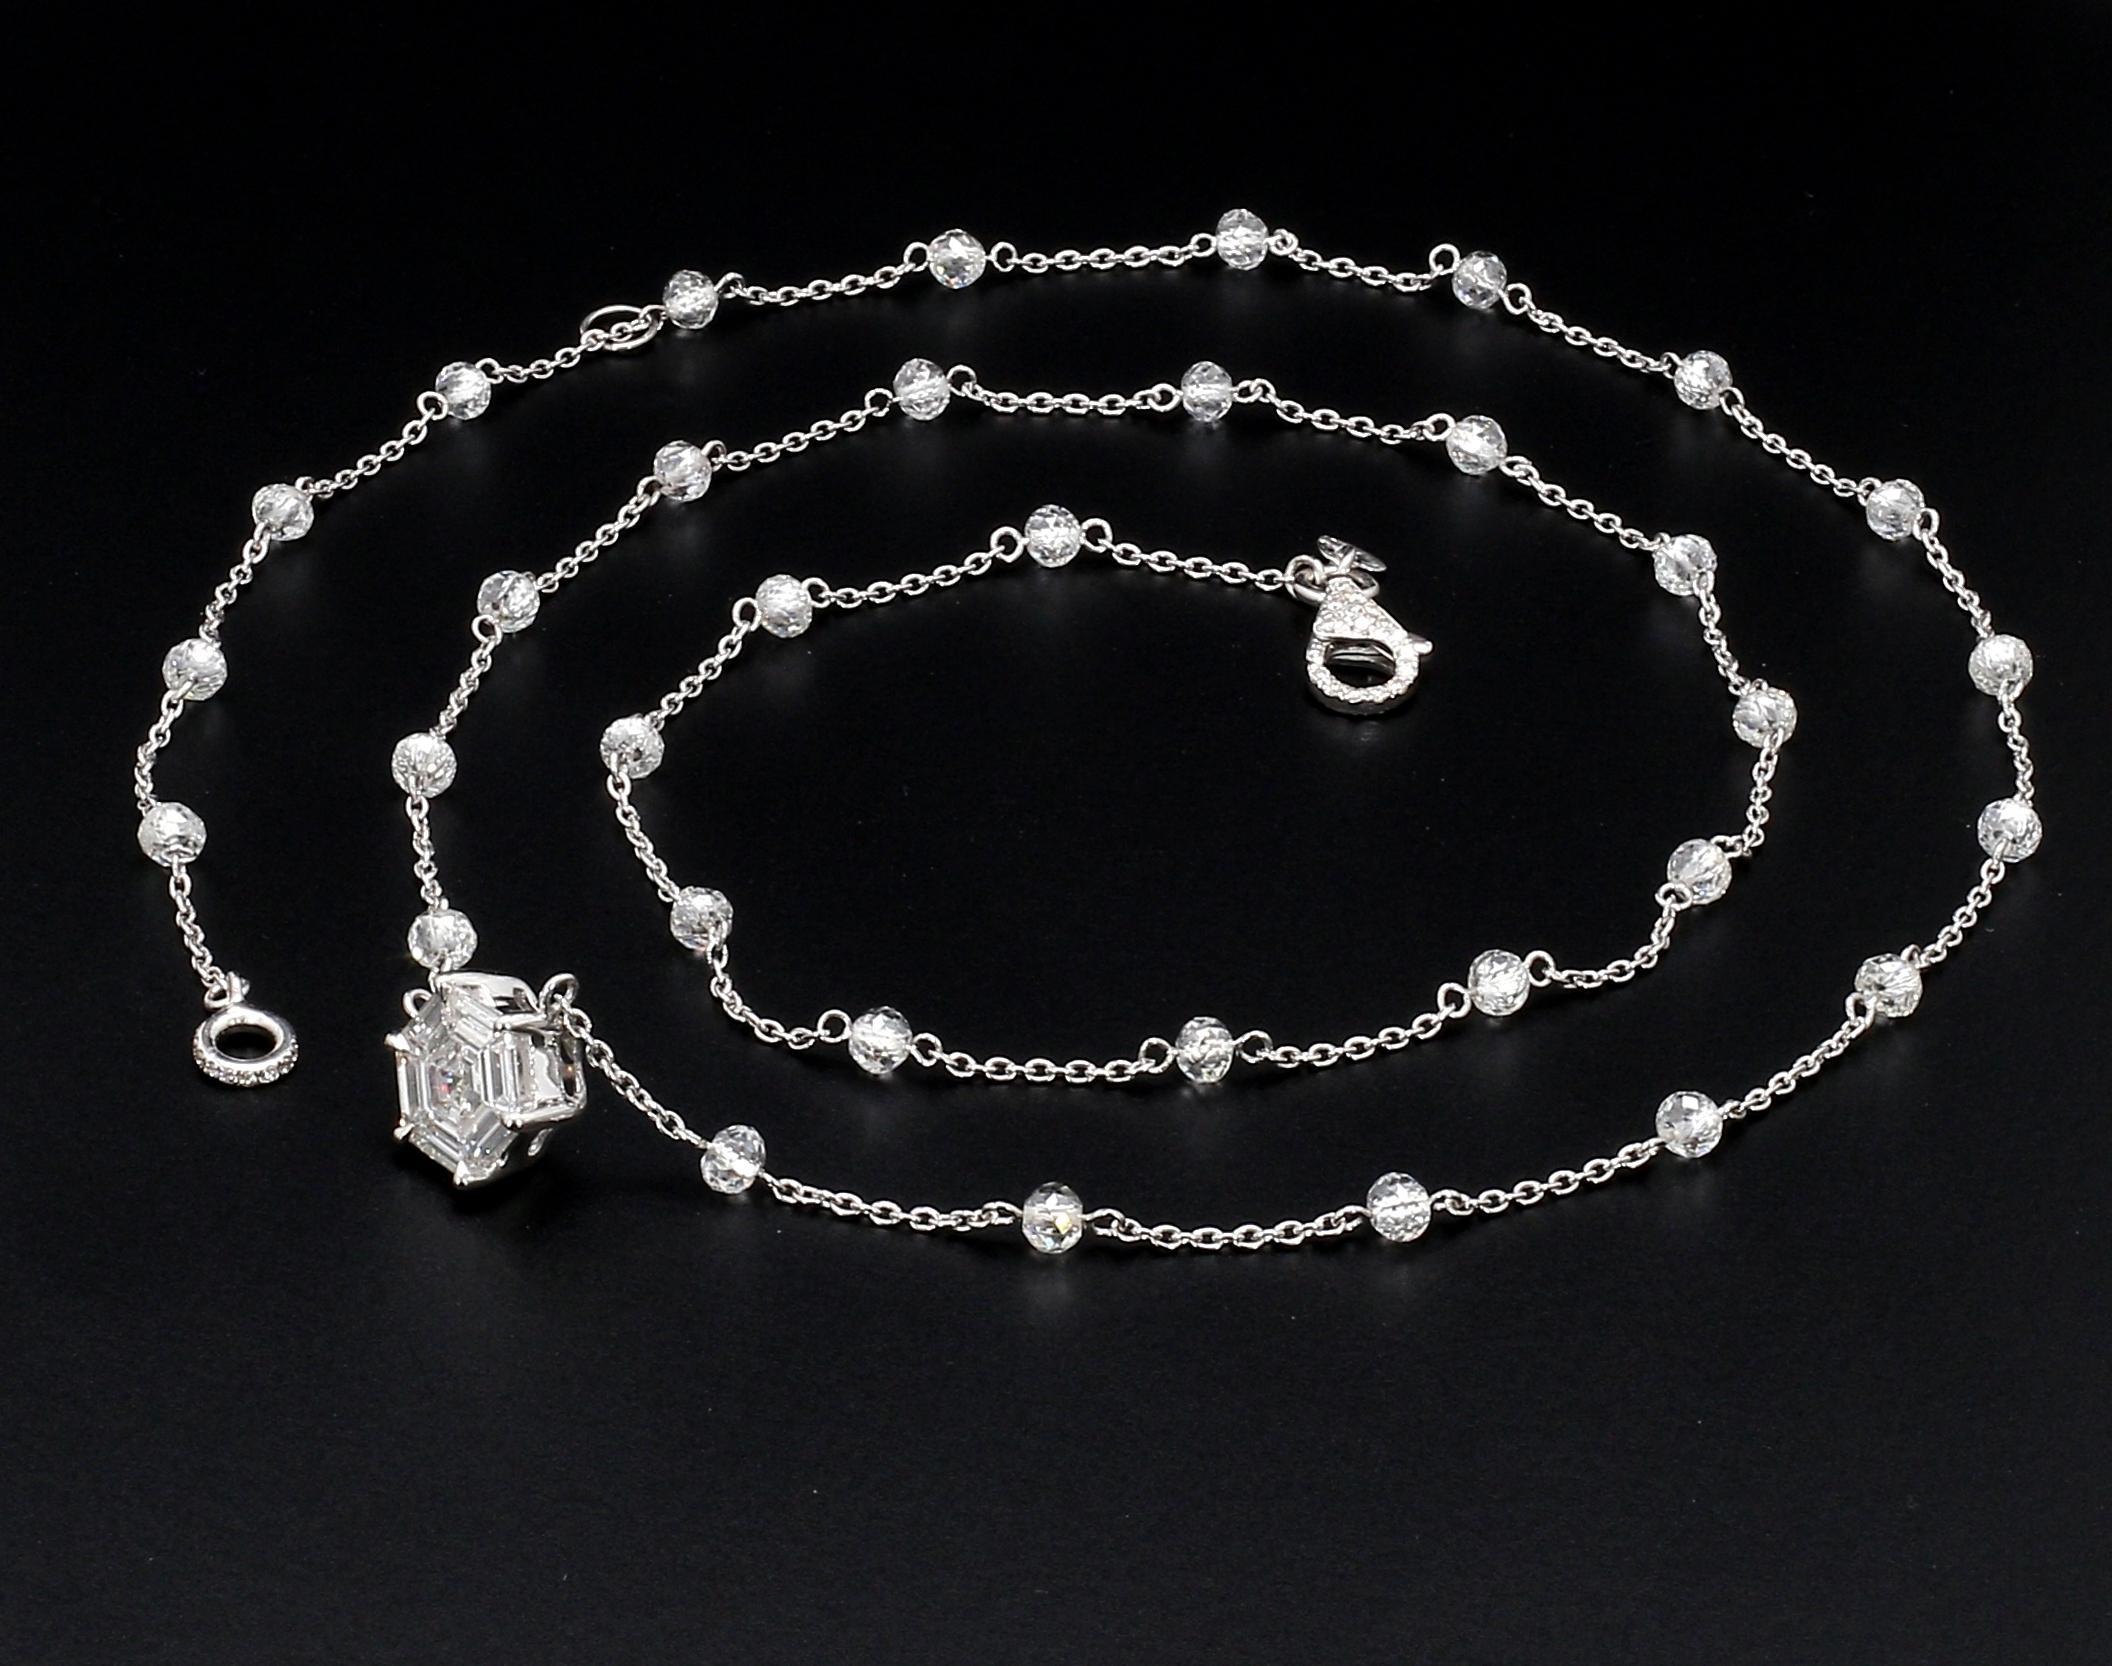 PANIM Collier hexagone en or blanc 18 carats avec perles et illusions de diamants

Dans ce collier, les diamants des perles sont régulièrement espacés sur une chaîne en or blanc. Cette pièce peut être portée tous les jours, seule ou superposée à